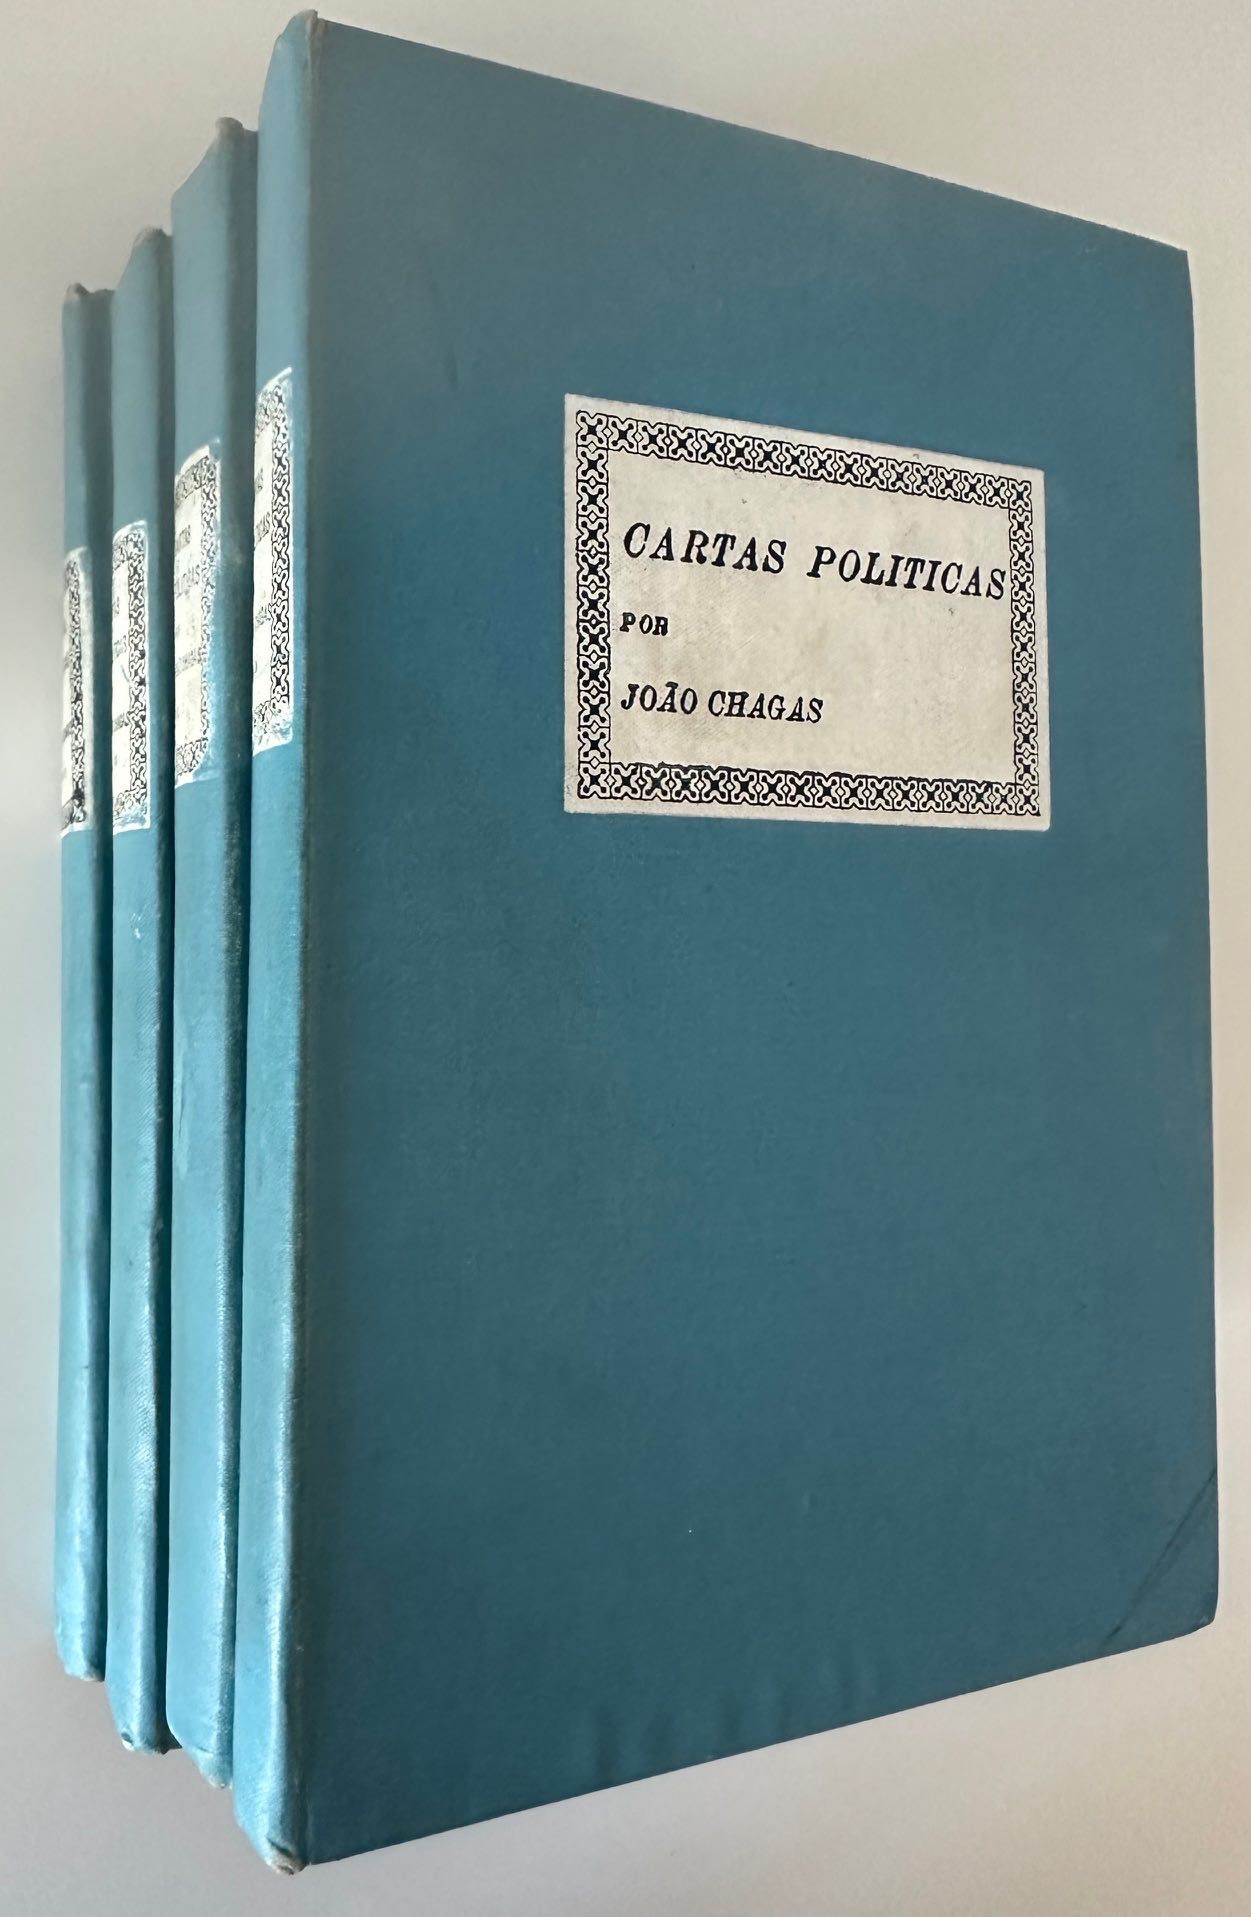 Cartas Políticas por João Chagas - 4 vols - 1908/1910